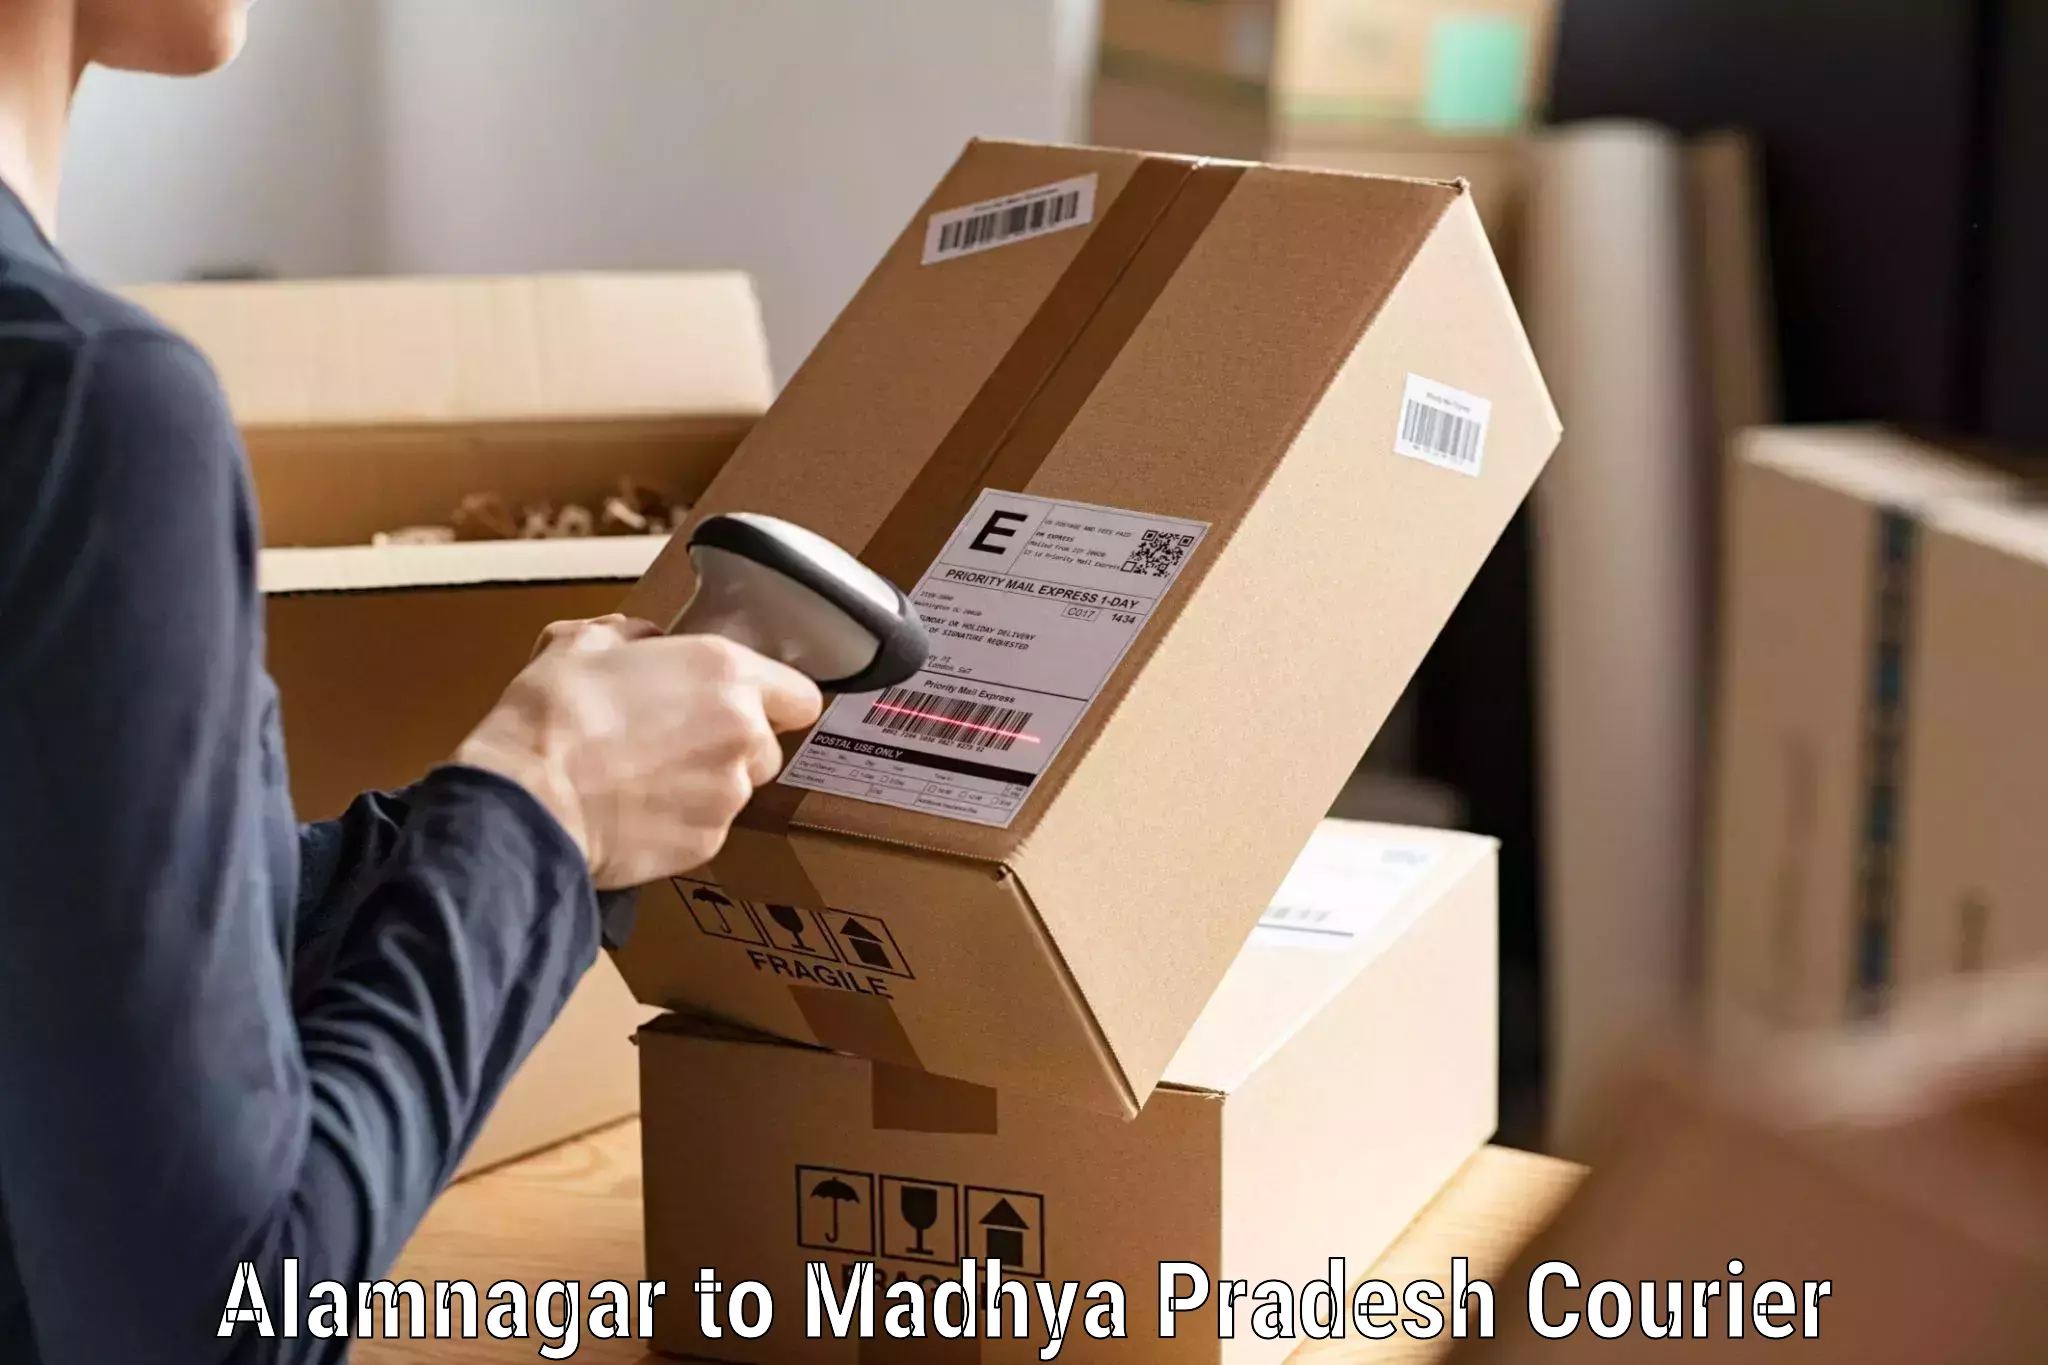 24-hour courier services in Alamnagar to Jaisinghnagar